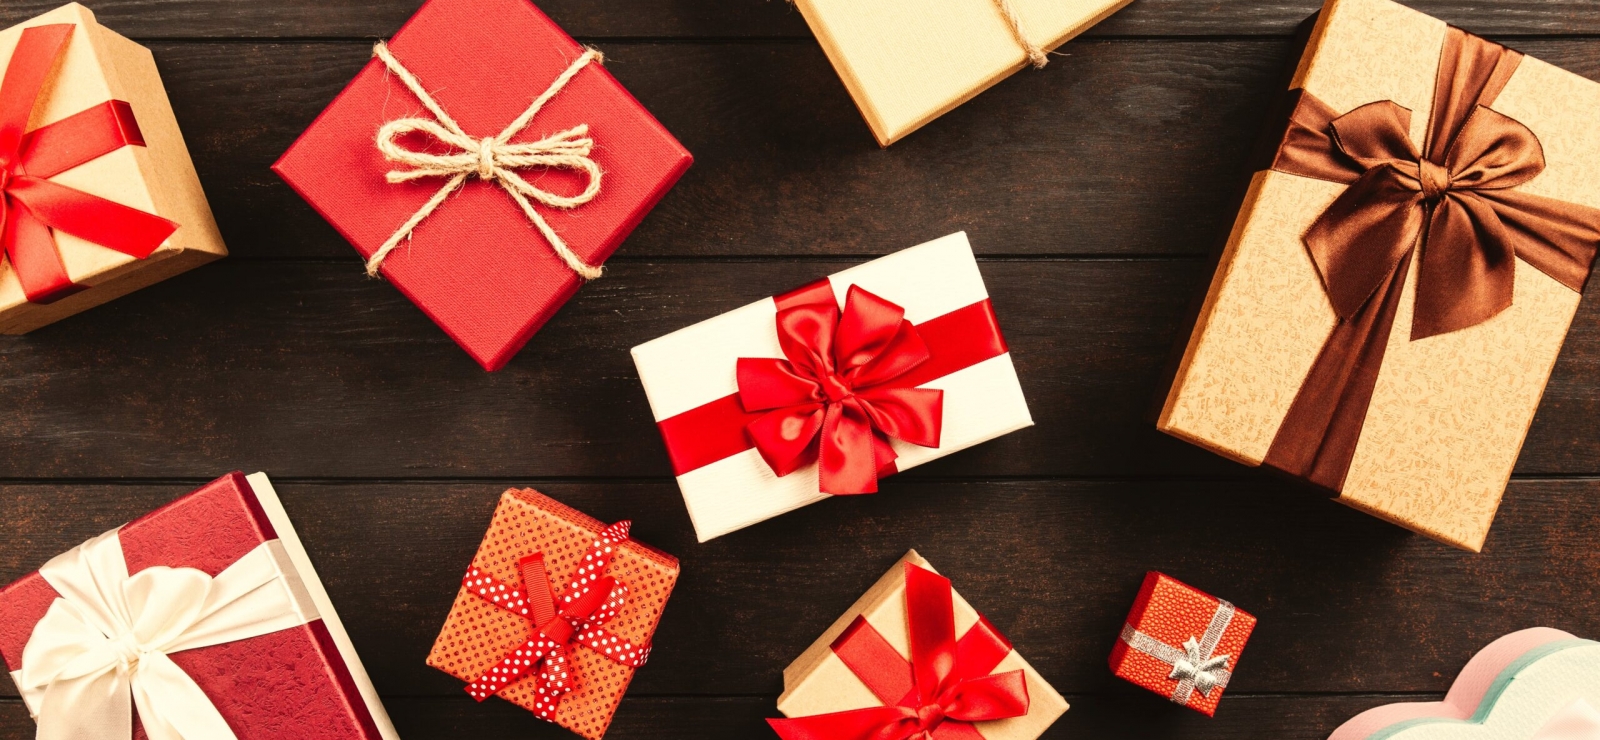 Organiser un party Secret Santa : idées-cadeaux et recettes!